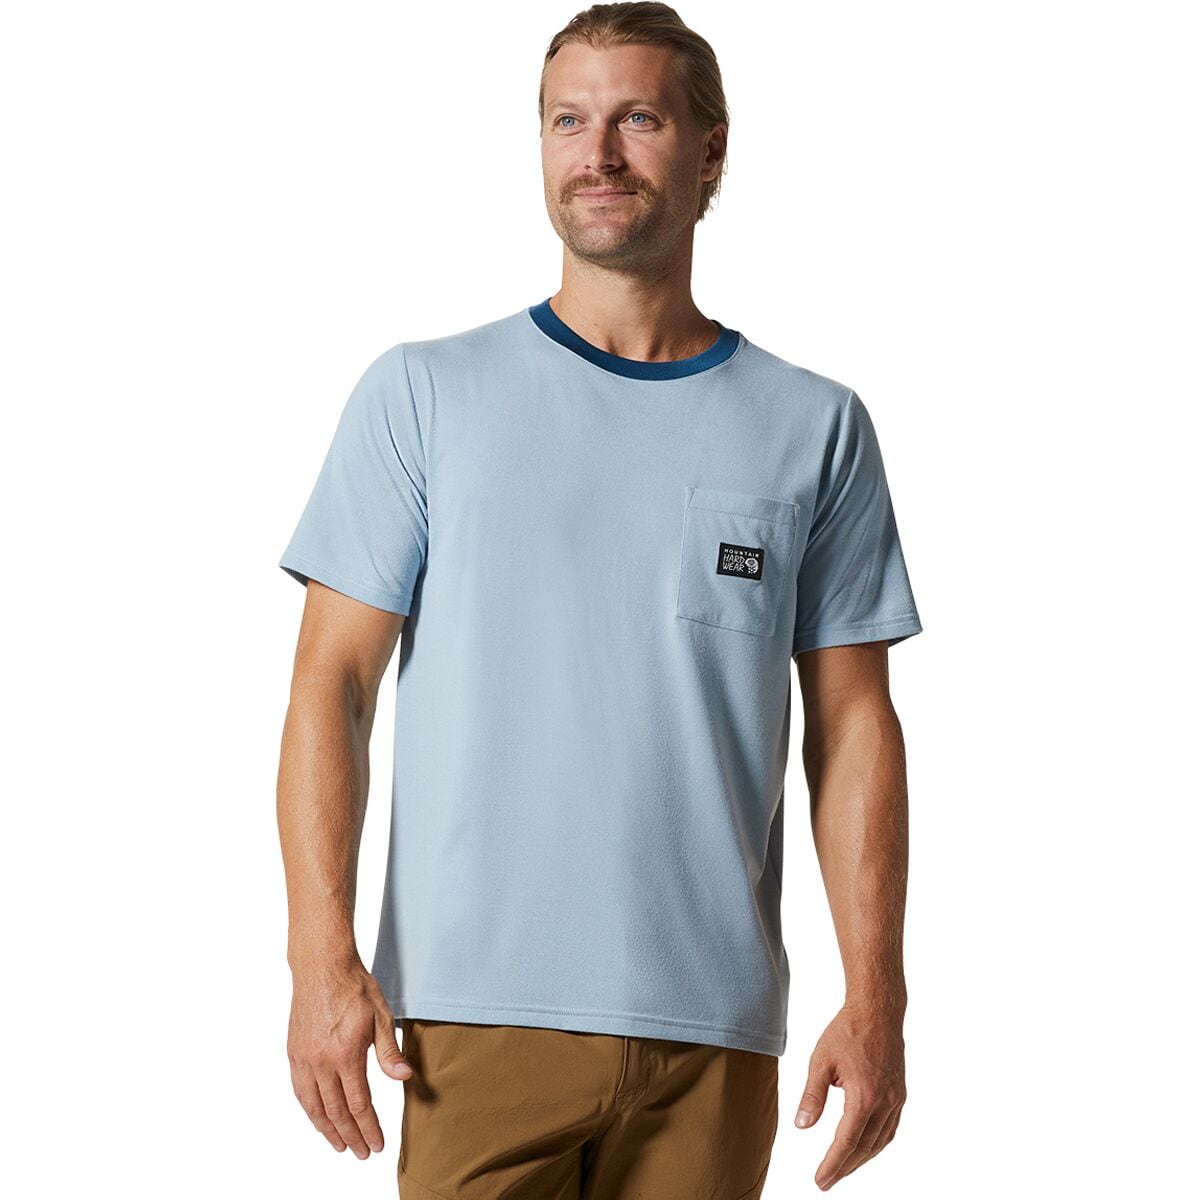 Wander Pass Short-Sleeve Shirt - Men